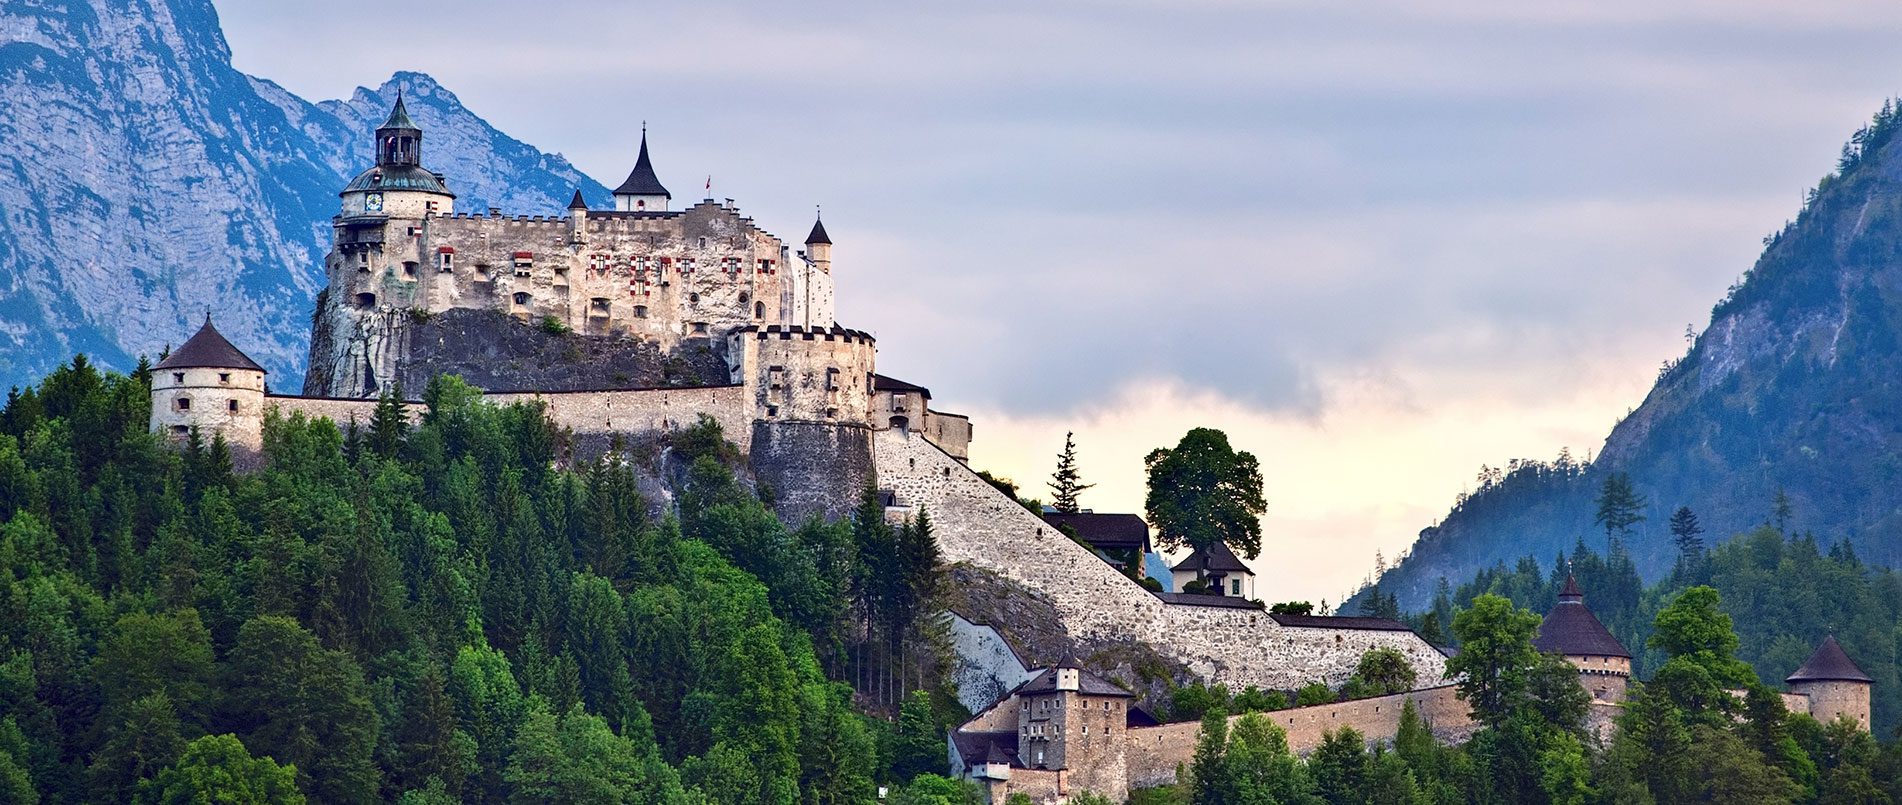 Ausflugsziele im Salzburger Land, Burg Hohenwerfen in Werfen im Pongau